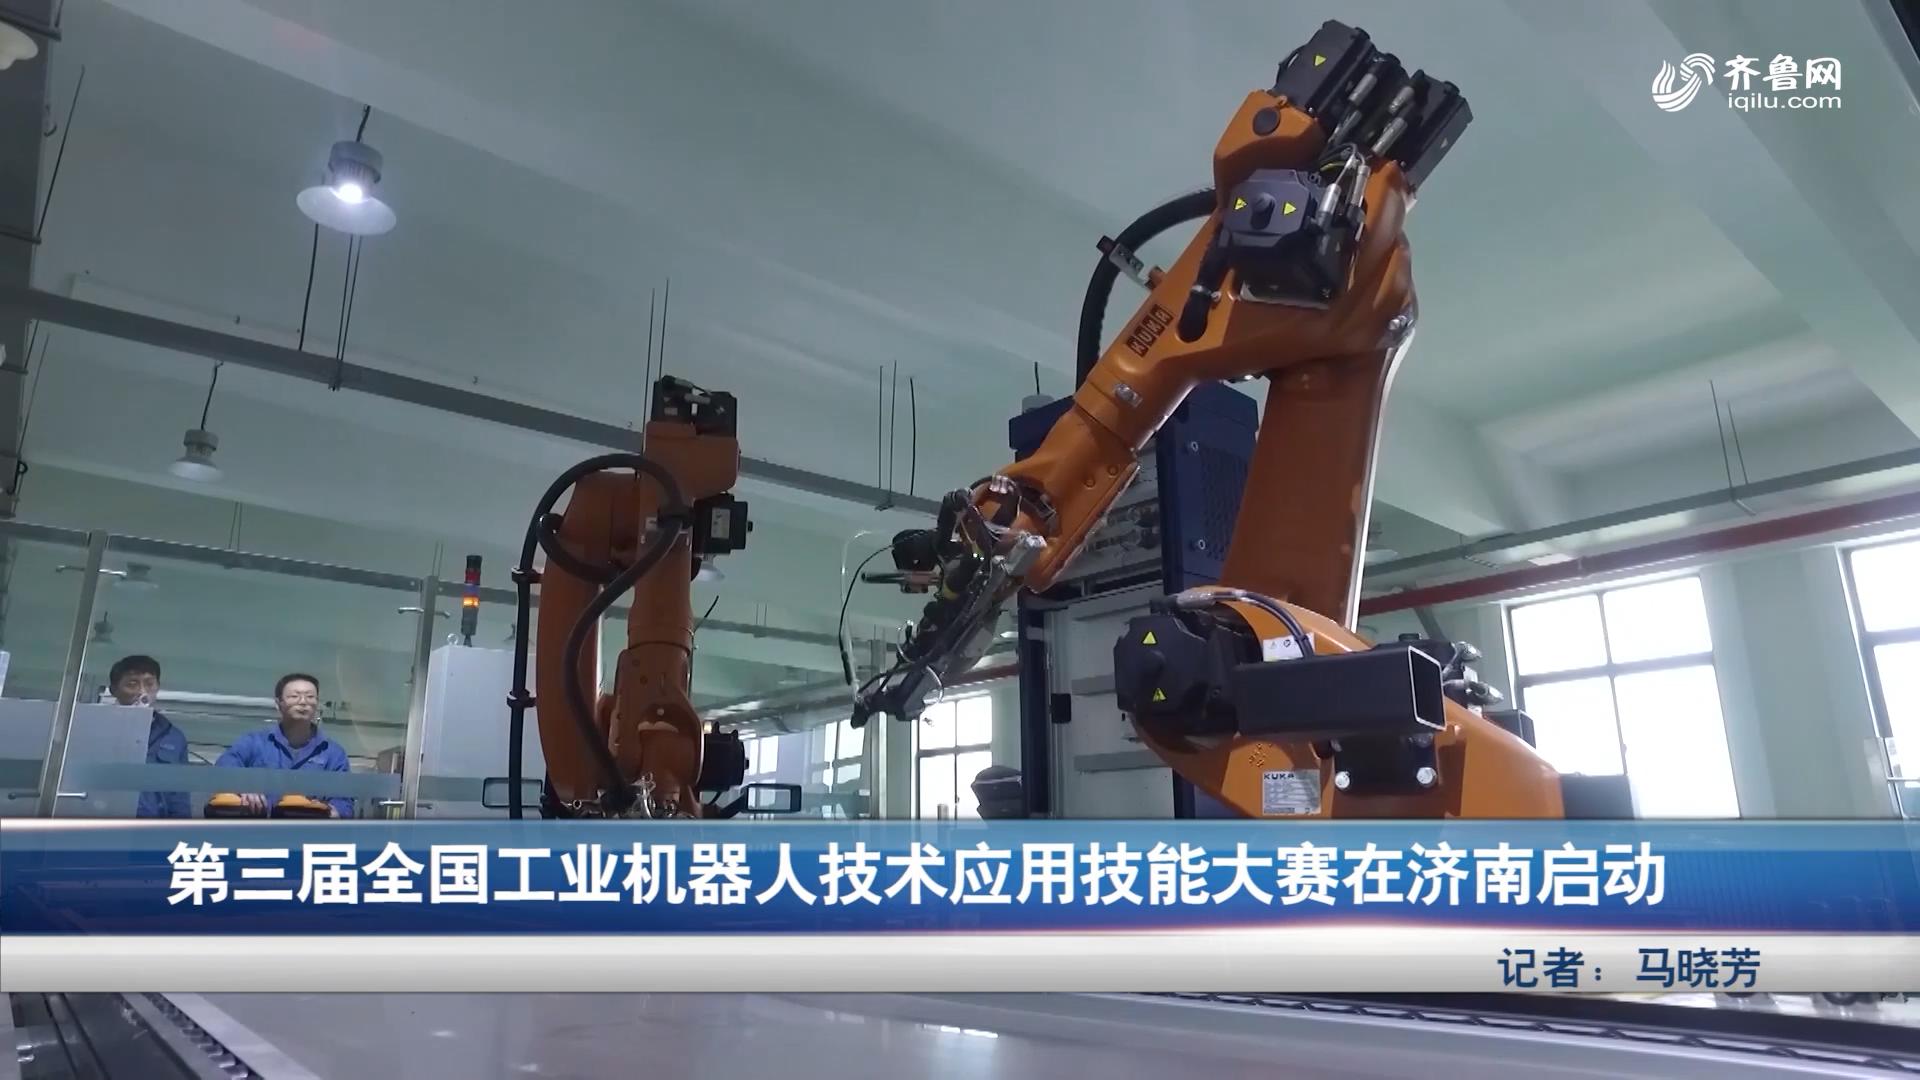 第三届全国工业机器人技术应用技能大赛在济南启动